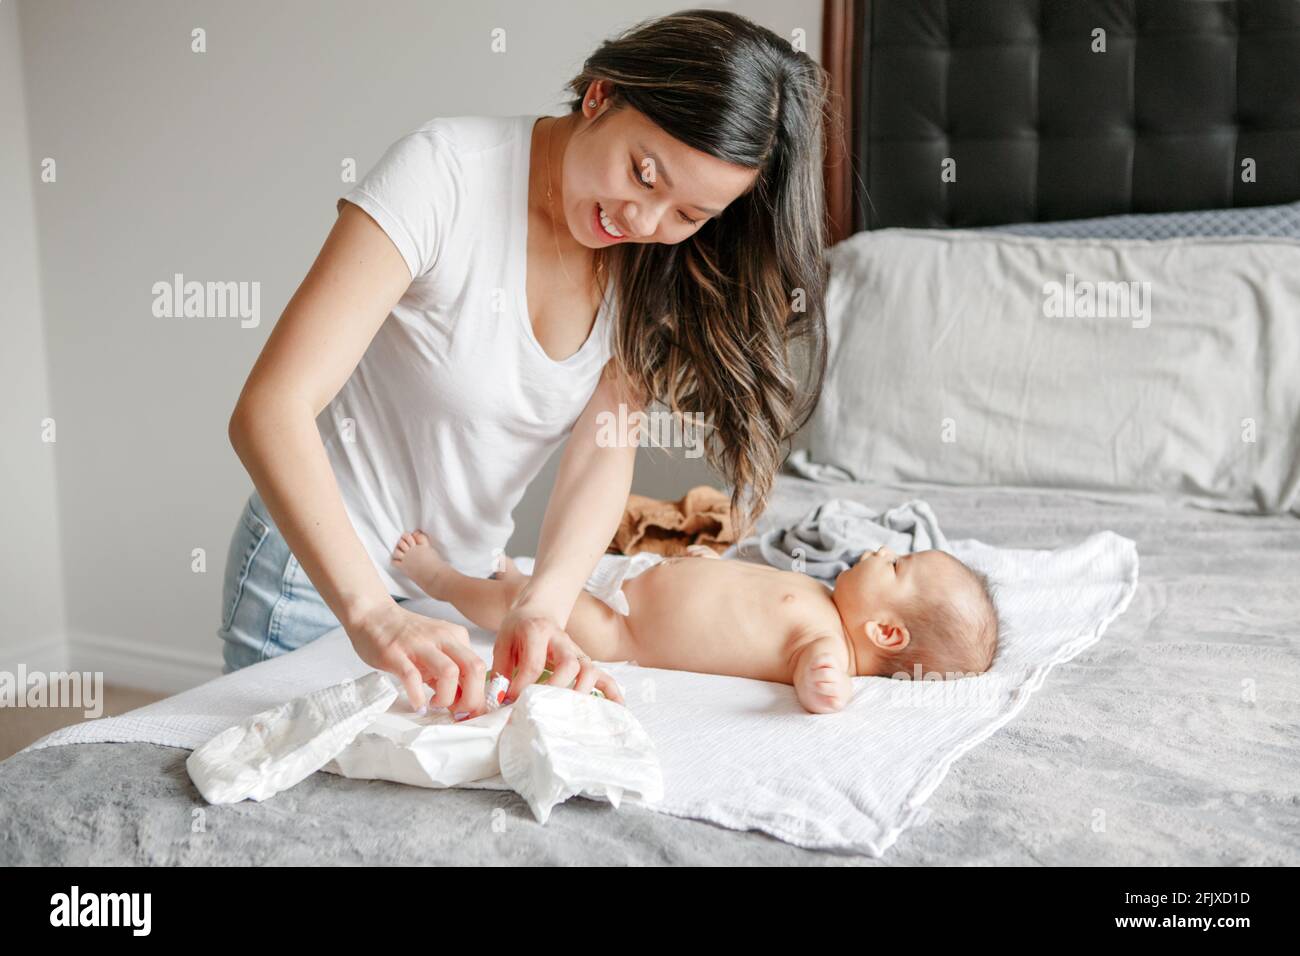 Asiatische beschäftigt Mutter ändern Windel Kleidung für neugeborene Baby Sohn Zu Hause Stockfoto